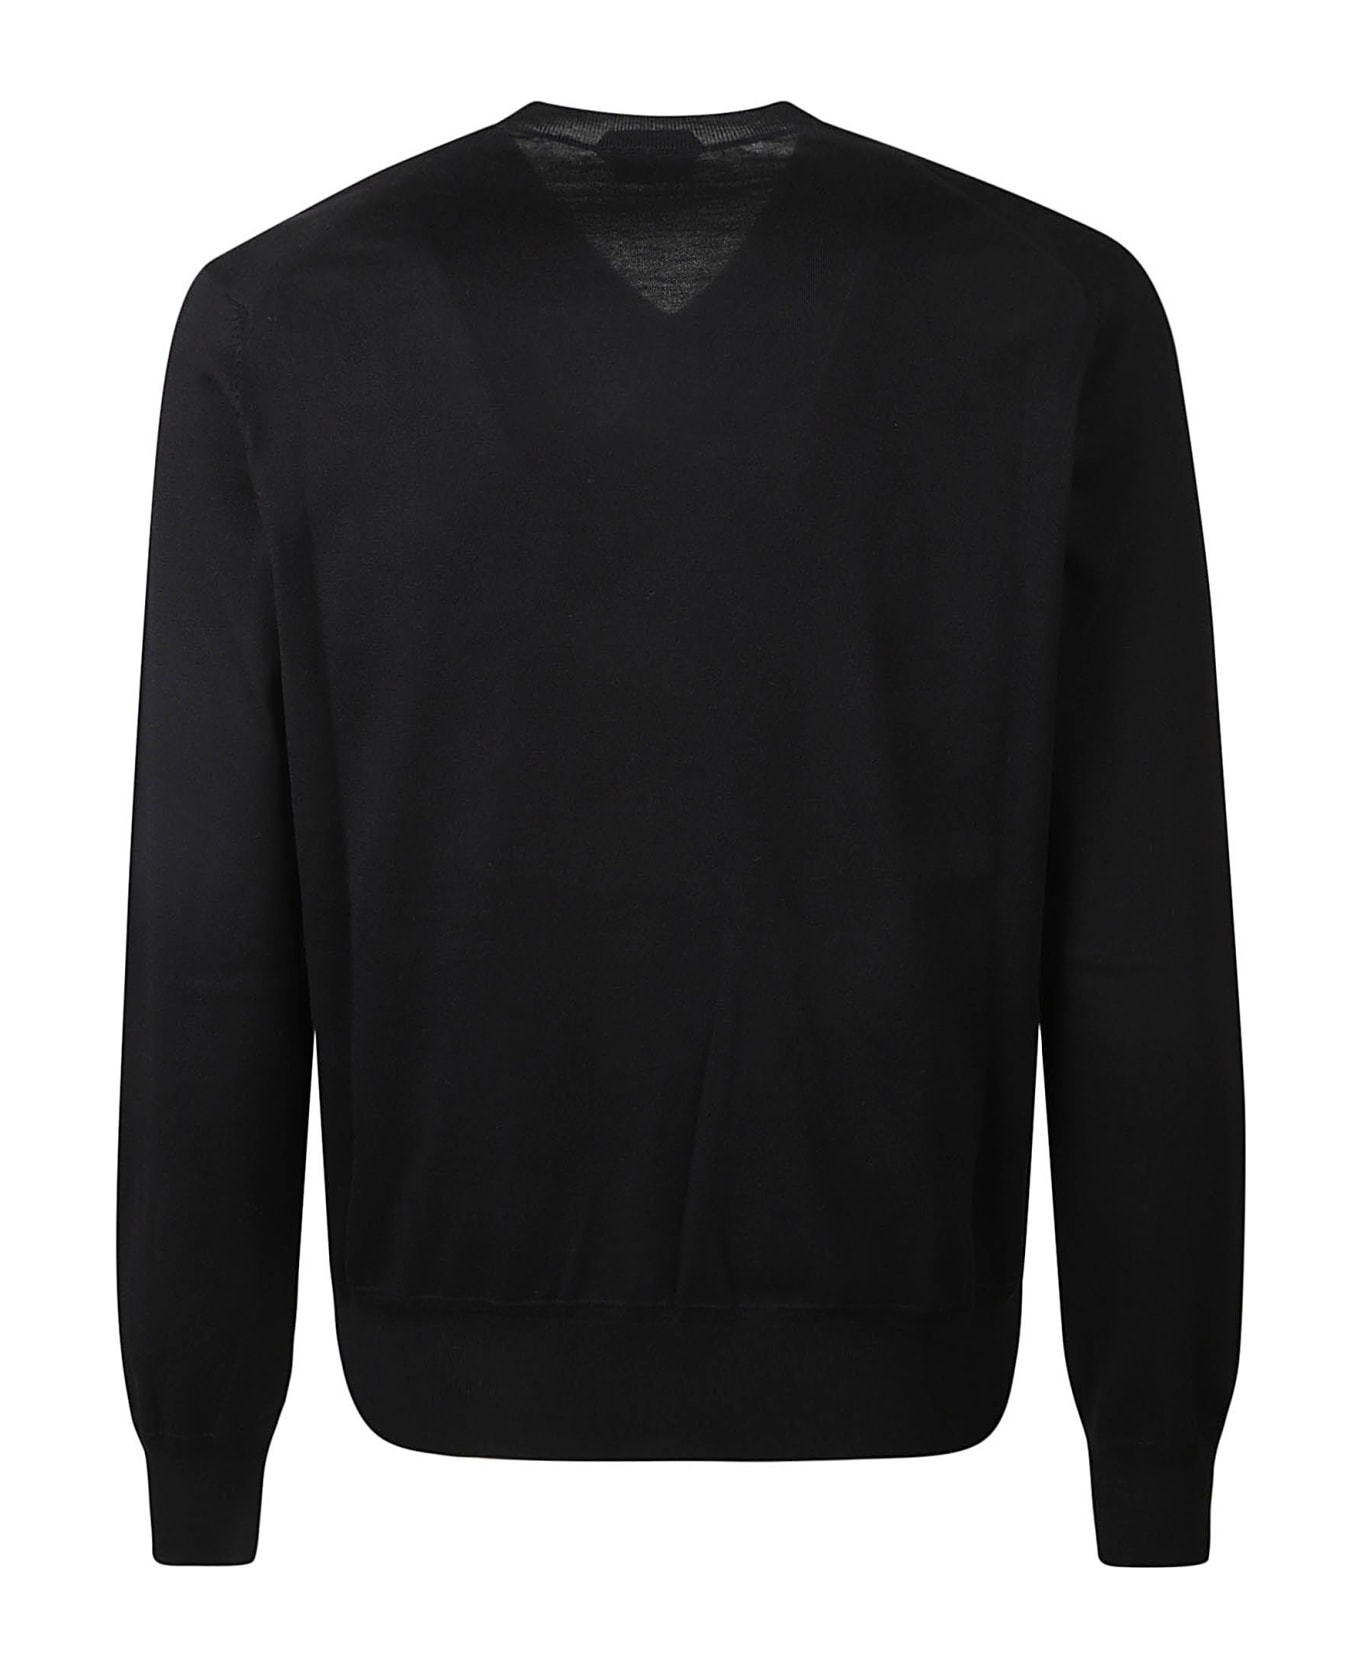 Tom Ford Round Neck Sweater - Black ニットウェア